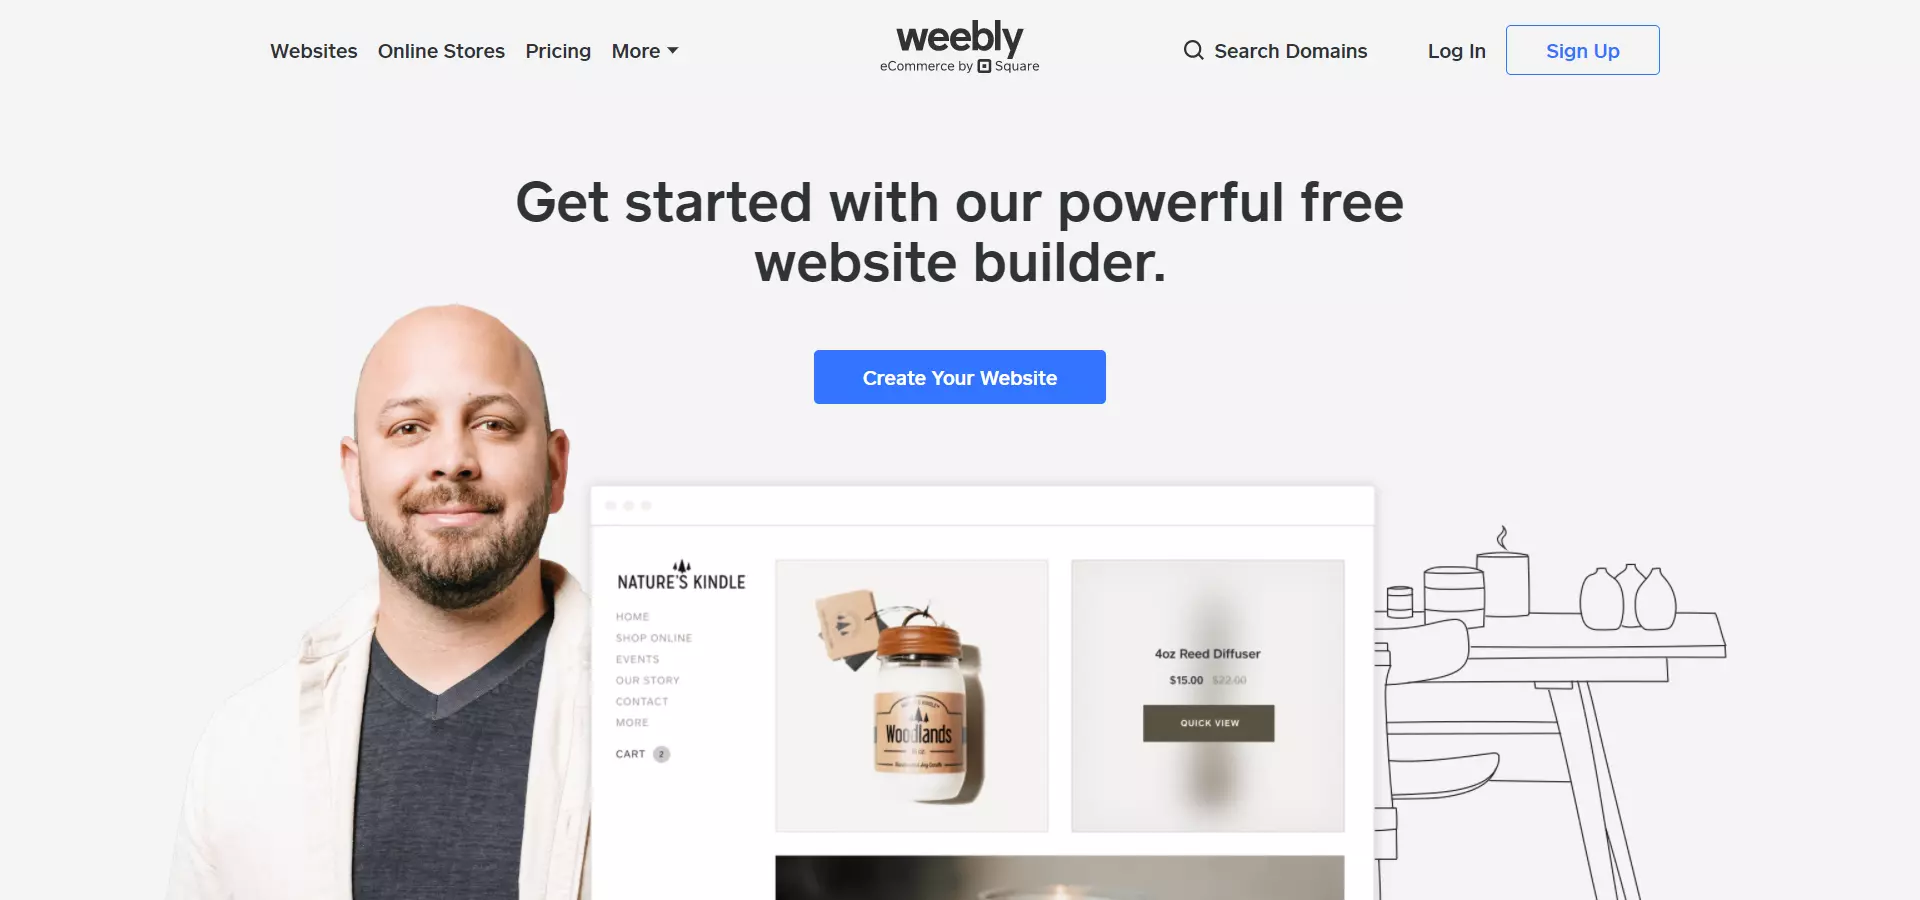 weebly สร้าง Sale page เซลเพจ สำเร็จรูป ฟรี